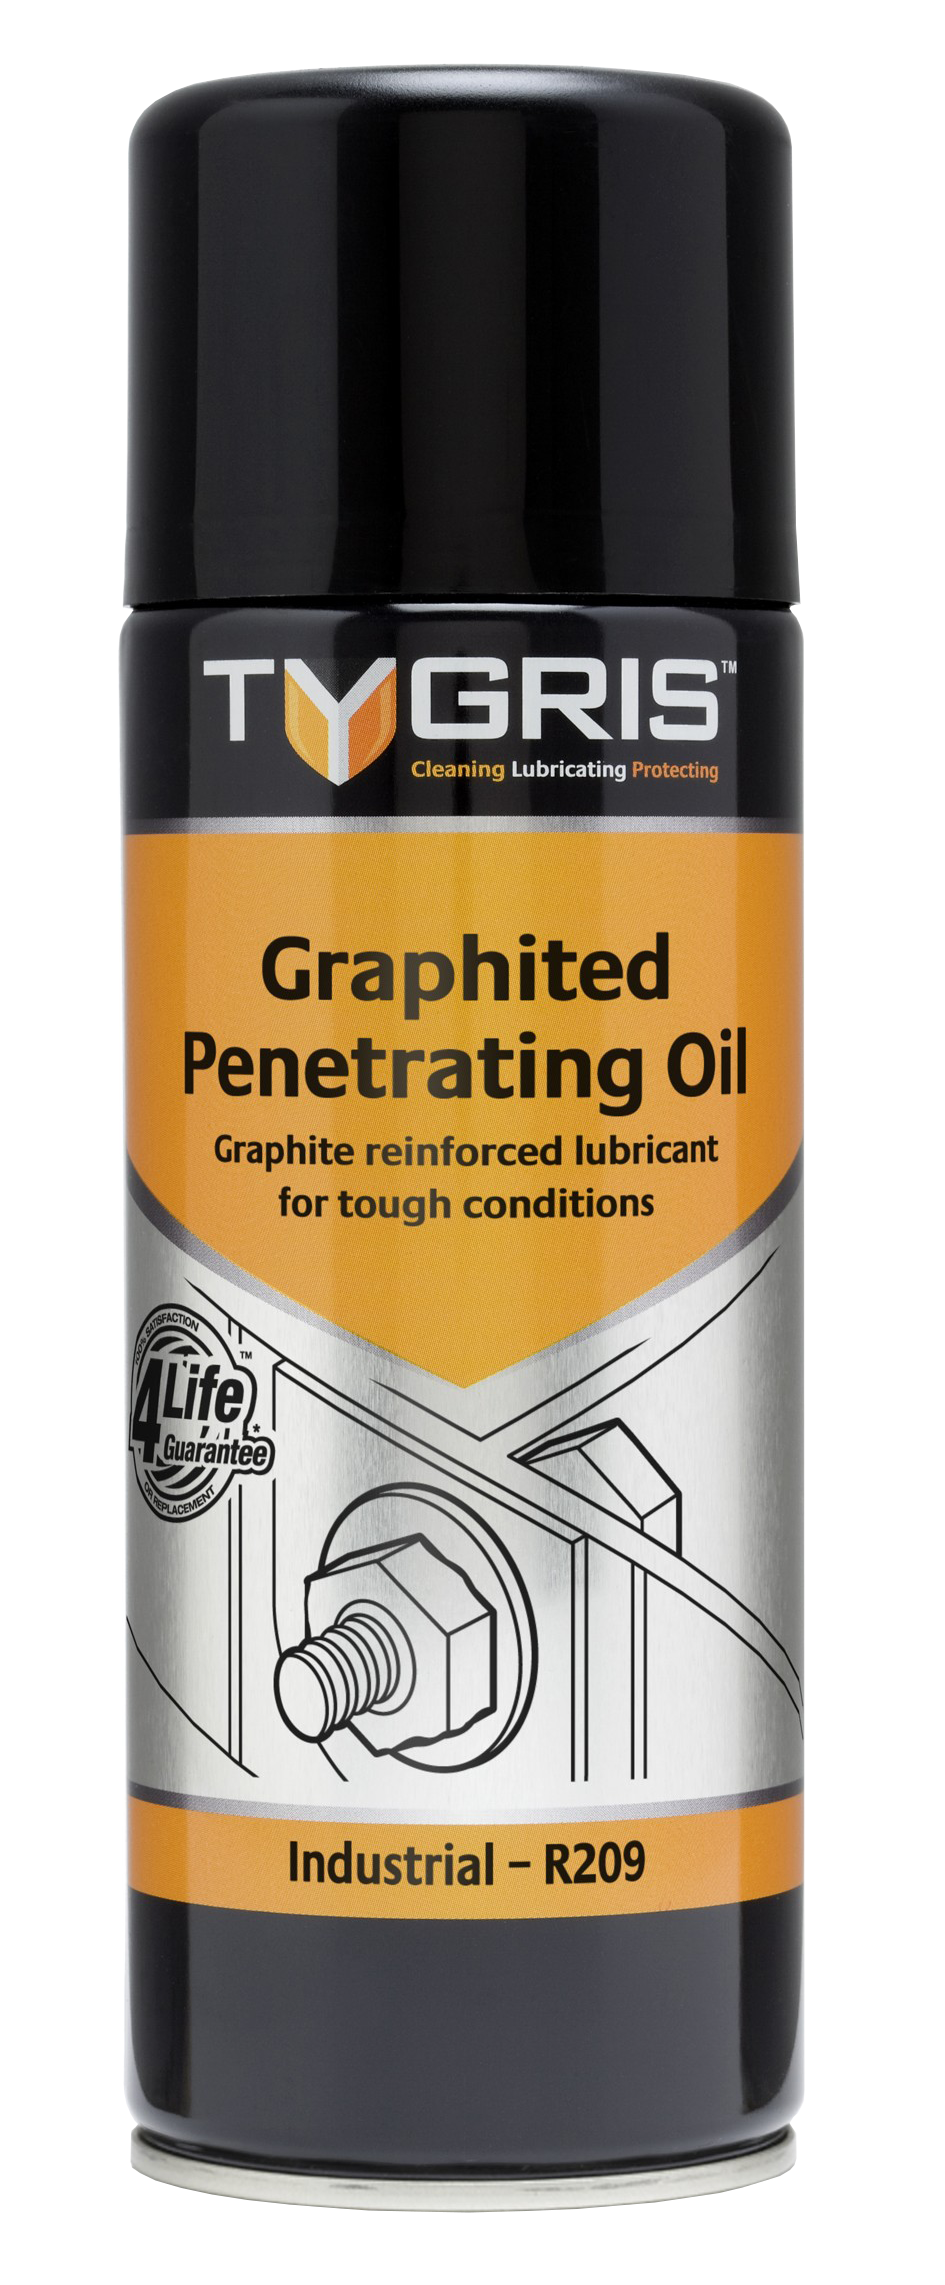 Tygris Graphited Penetrating Oil - grafiiitmääre keerme avamiseks 400ml